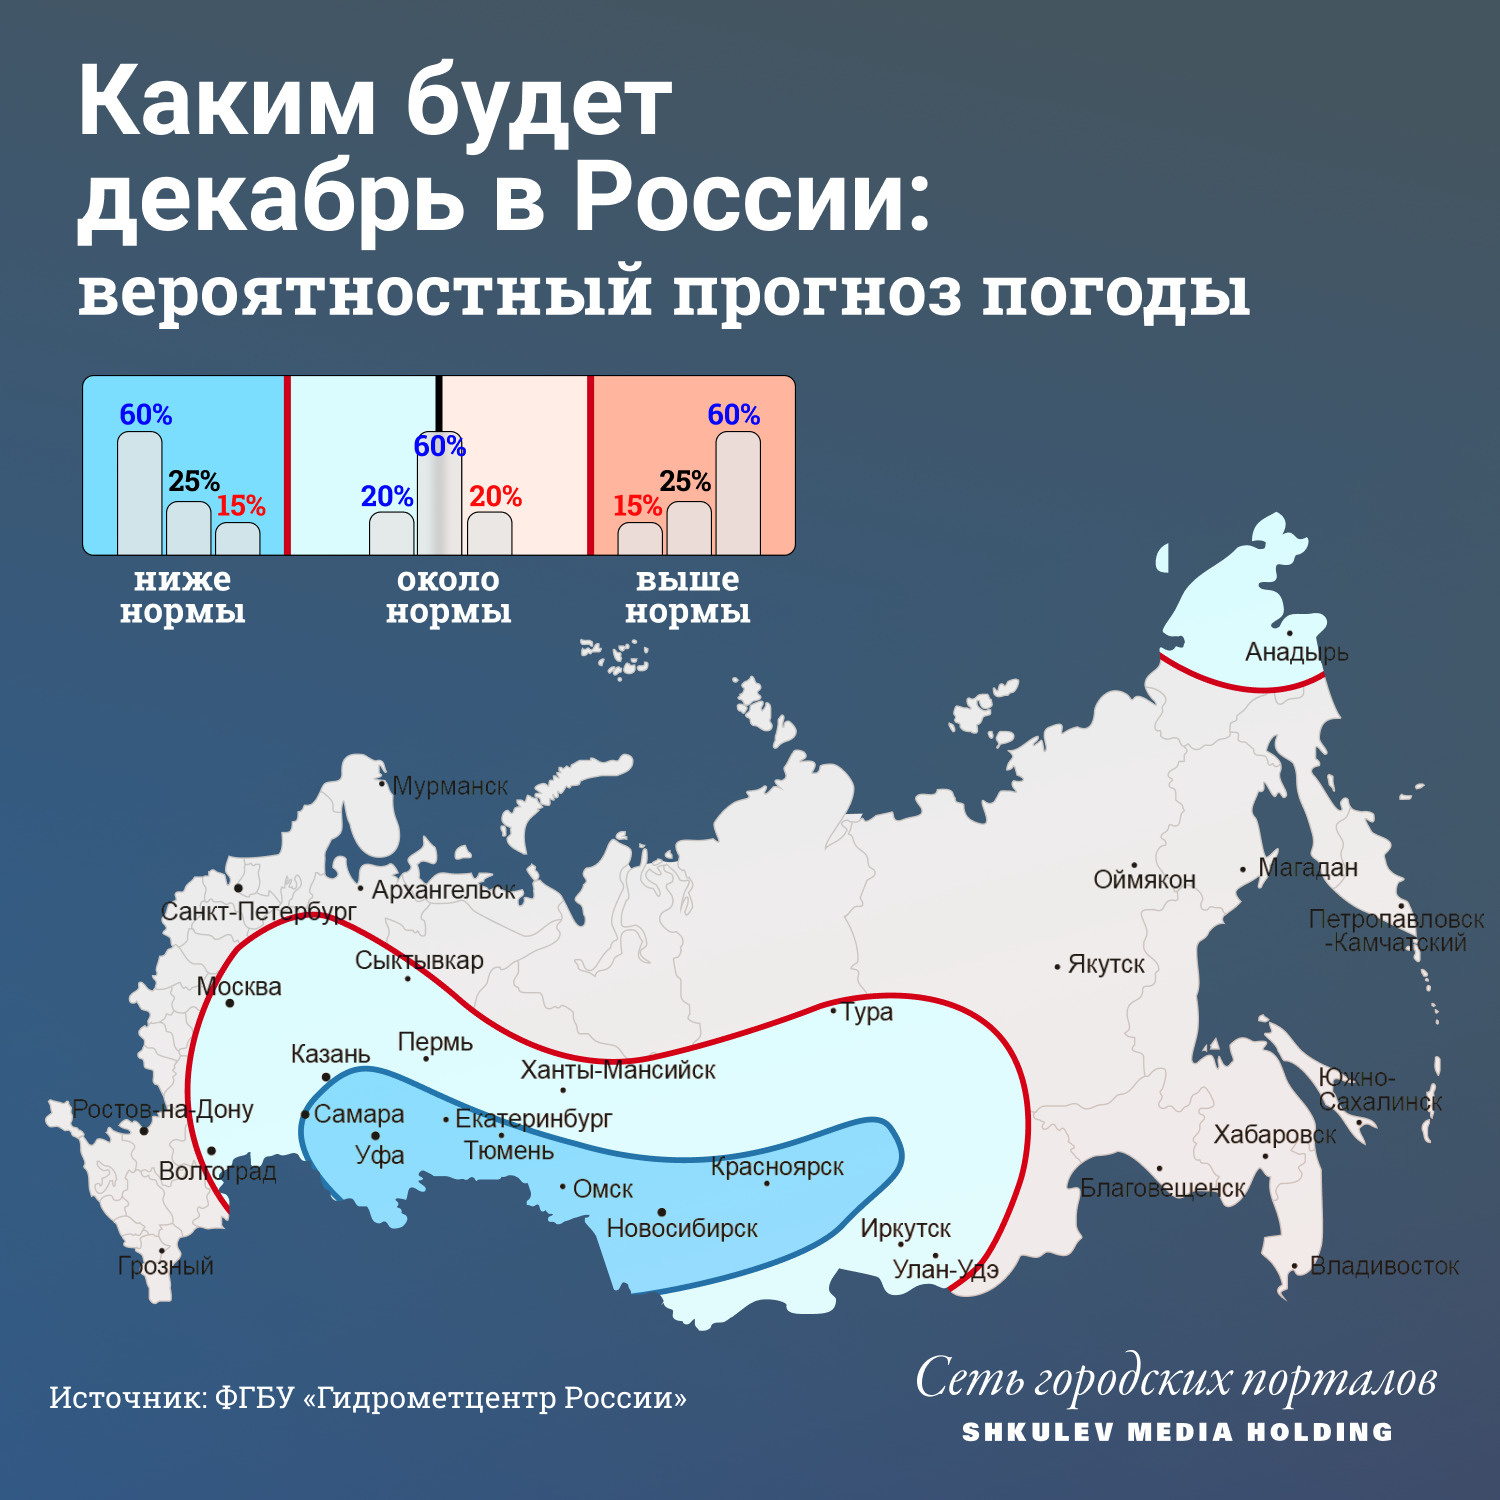 В декабре ожидаются морозы в Приволжском федеральном округе, на Урале и в Сибири